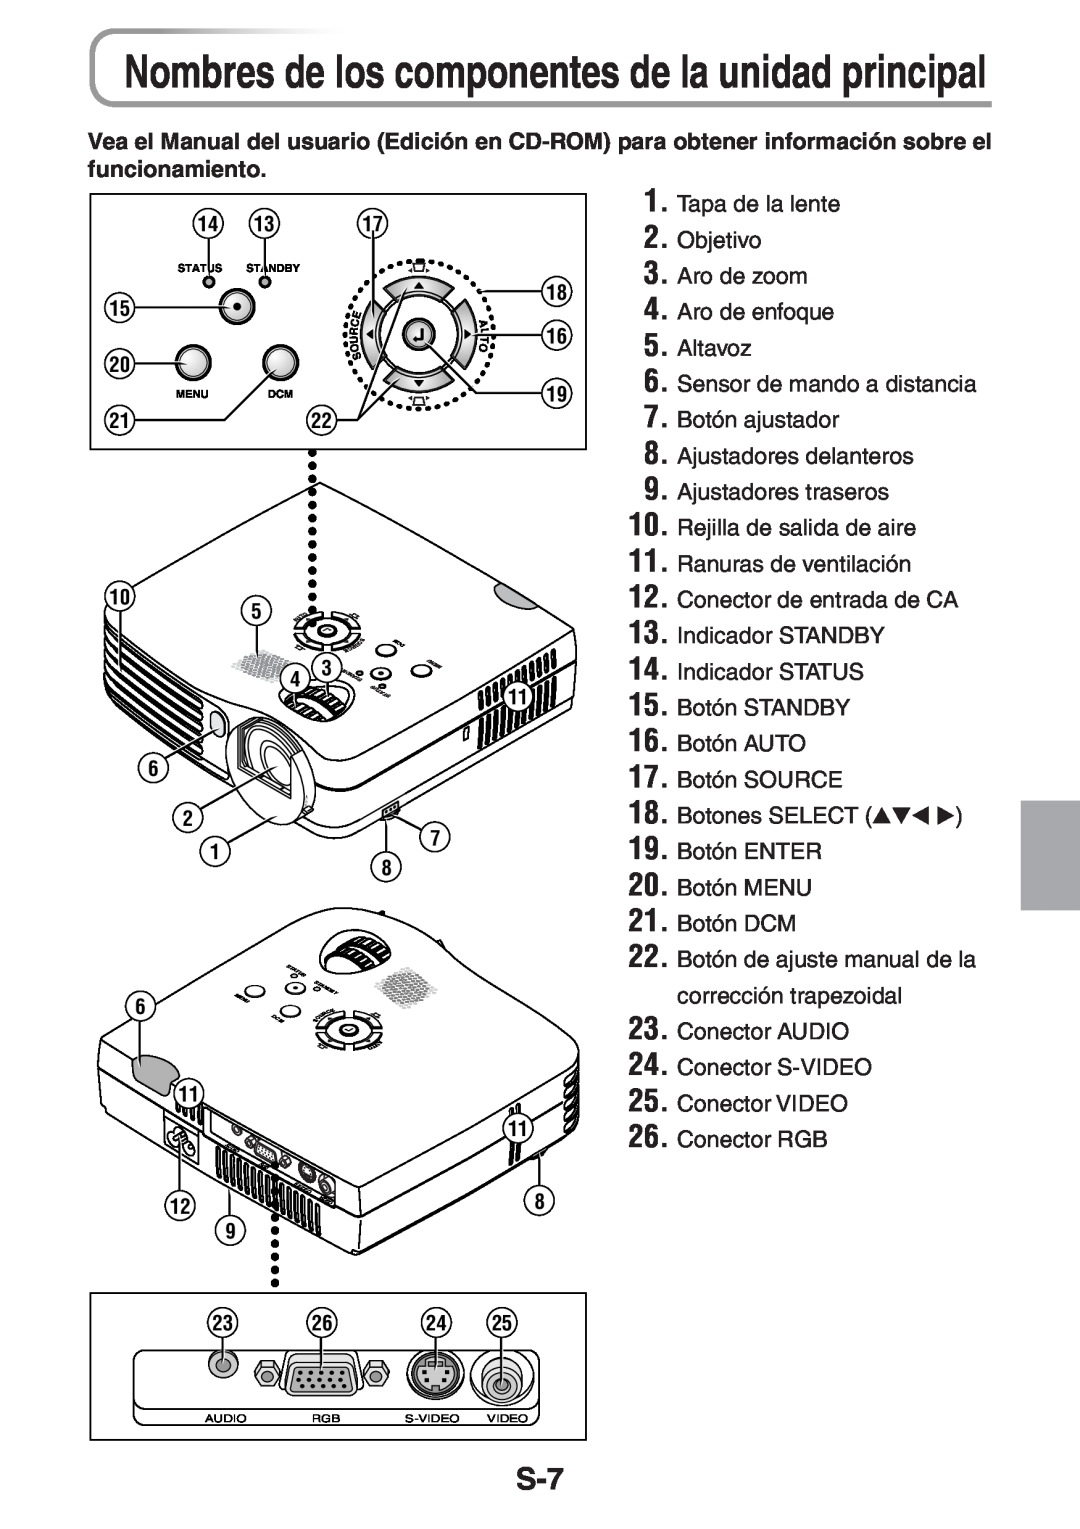 3M PX5 user manual Nombres de los componentes de la unidad principal 